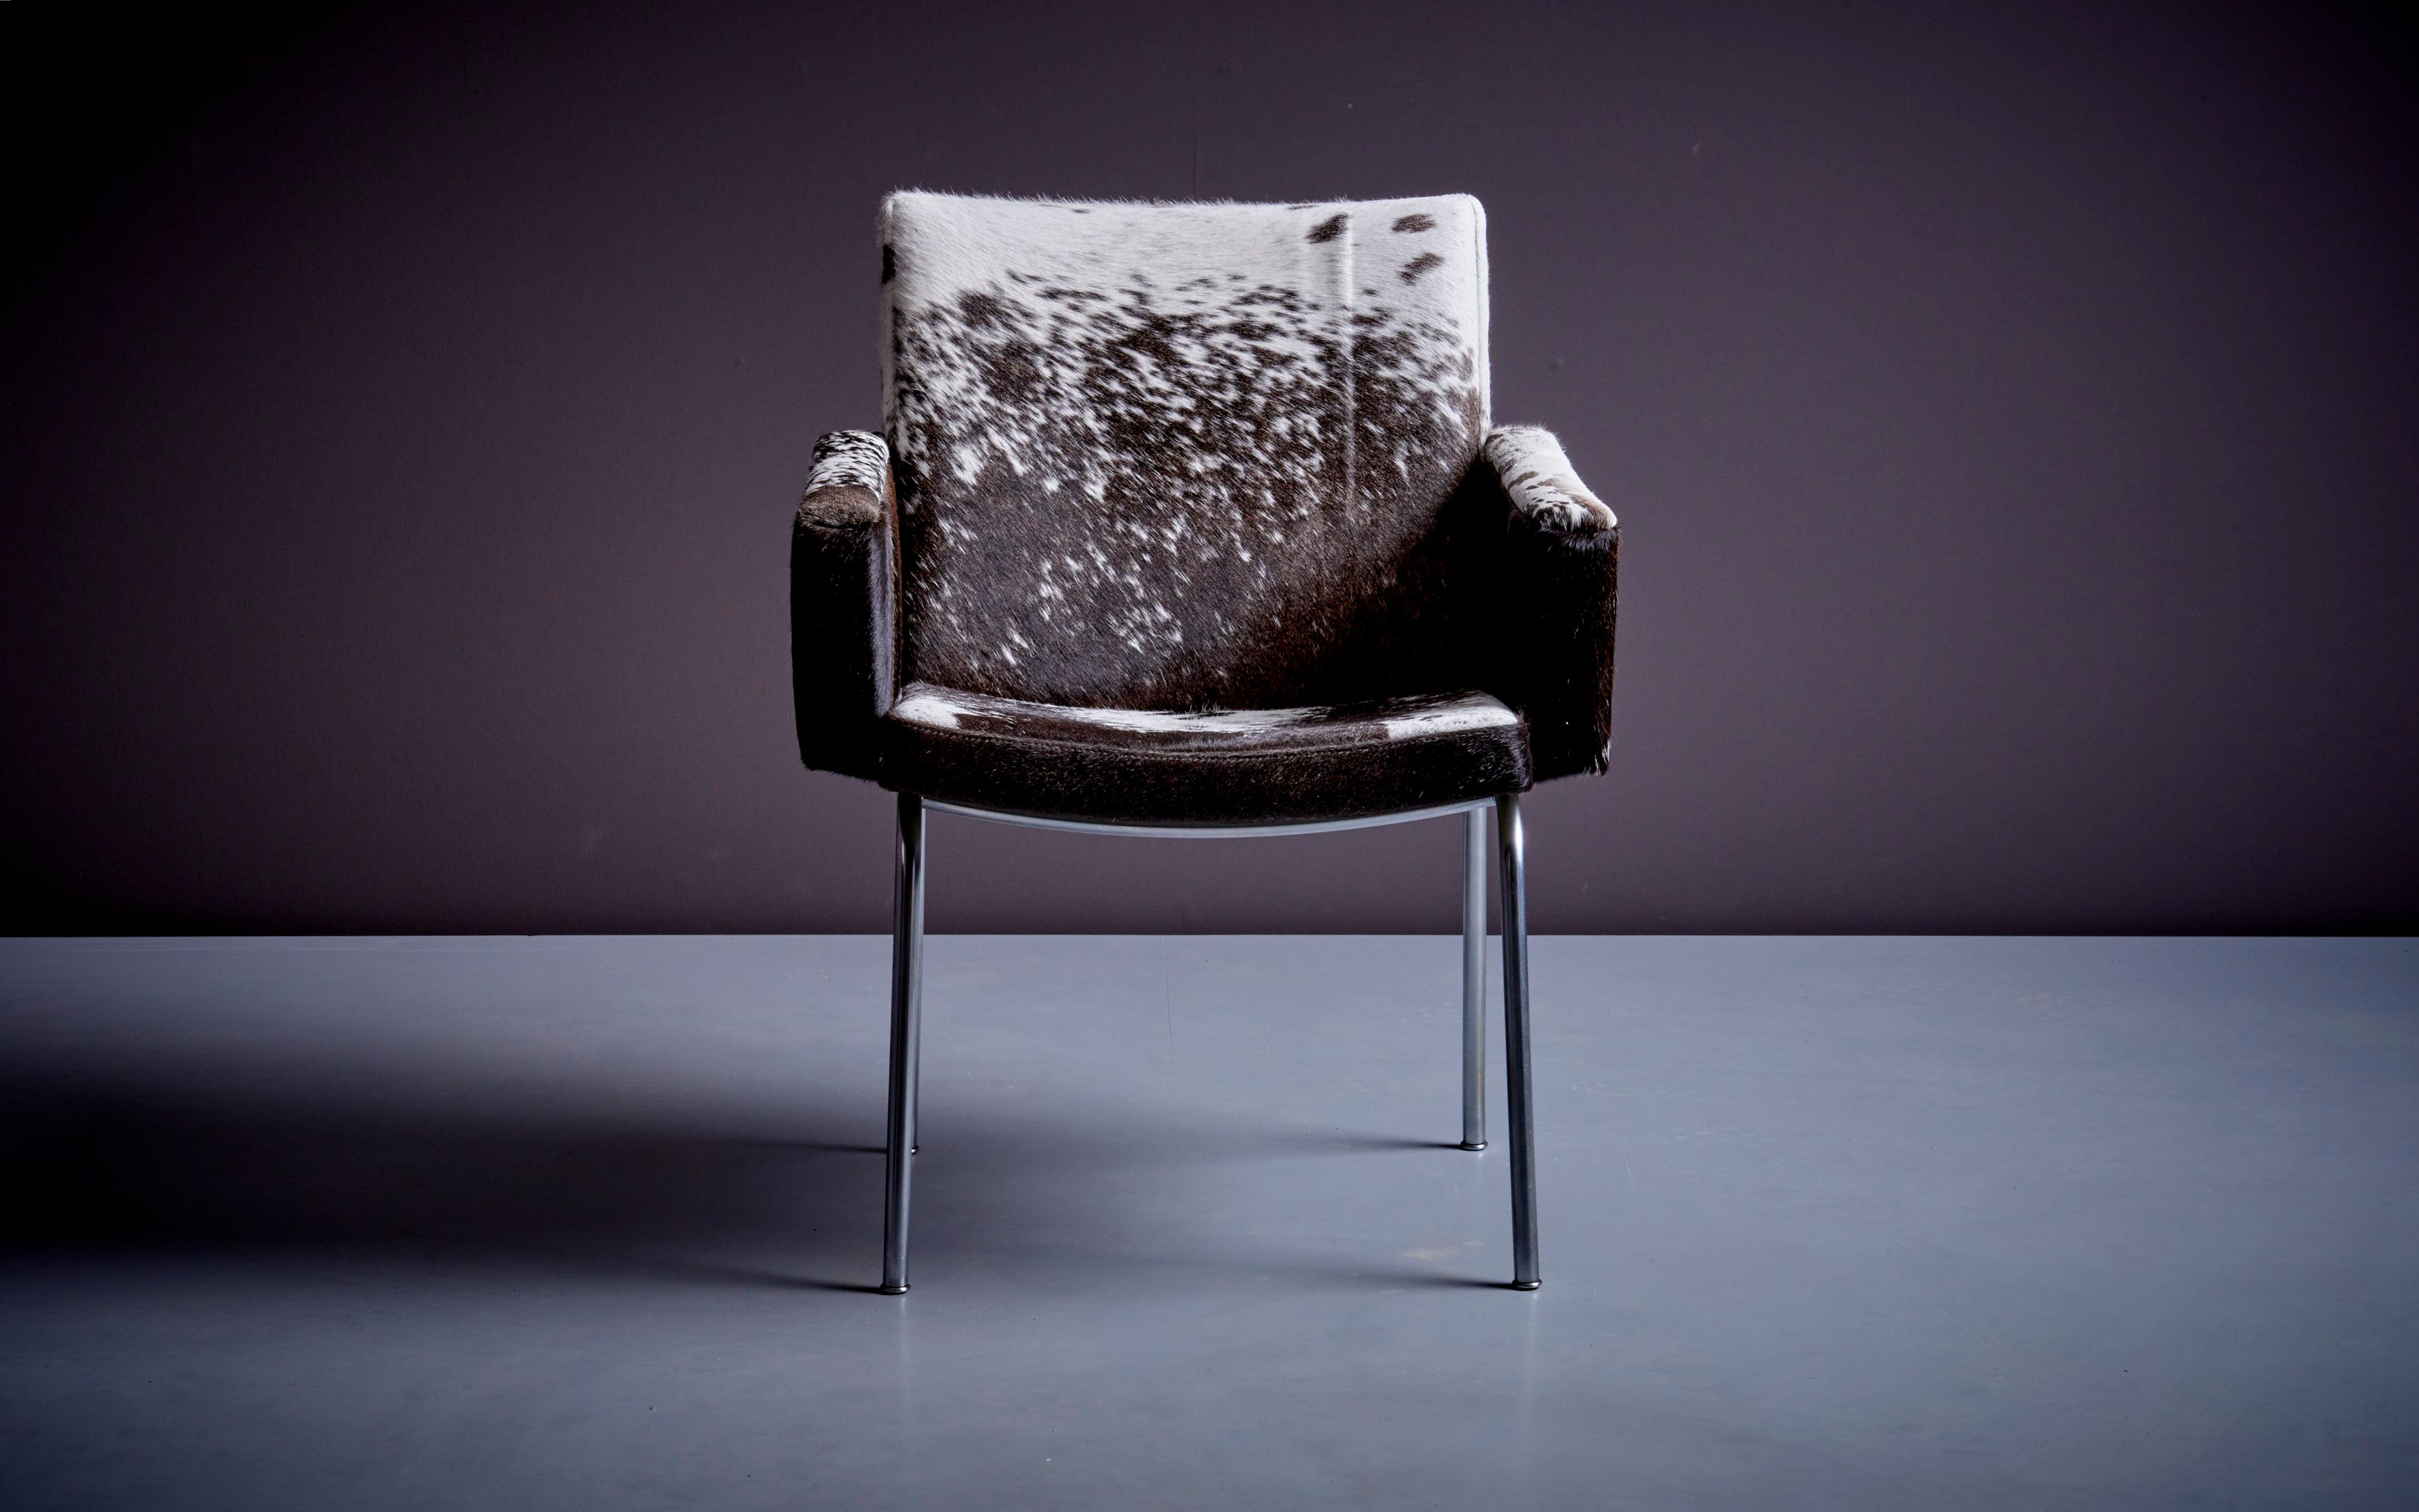 Fauteuil Hans Wegner AP48 en peau de vache, Danemark 1960s. Le fauteuil AP48 est un classique de l'ameublement conçu par Hans Wegner, qui l'a dessiné en 1951 pour le fabricant A.P. Volé. 

Le fauteuil AP48 présente un design moderne du milieu du